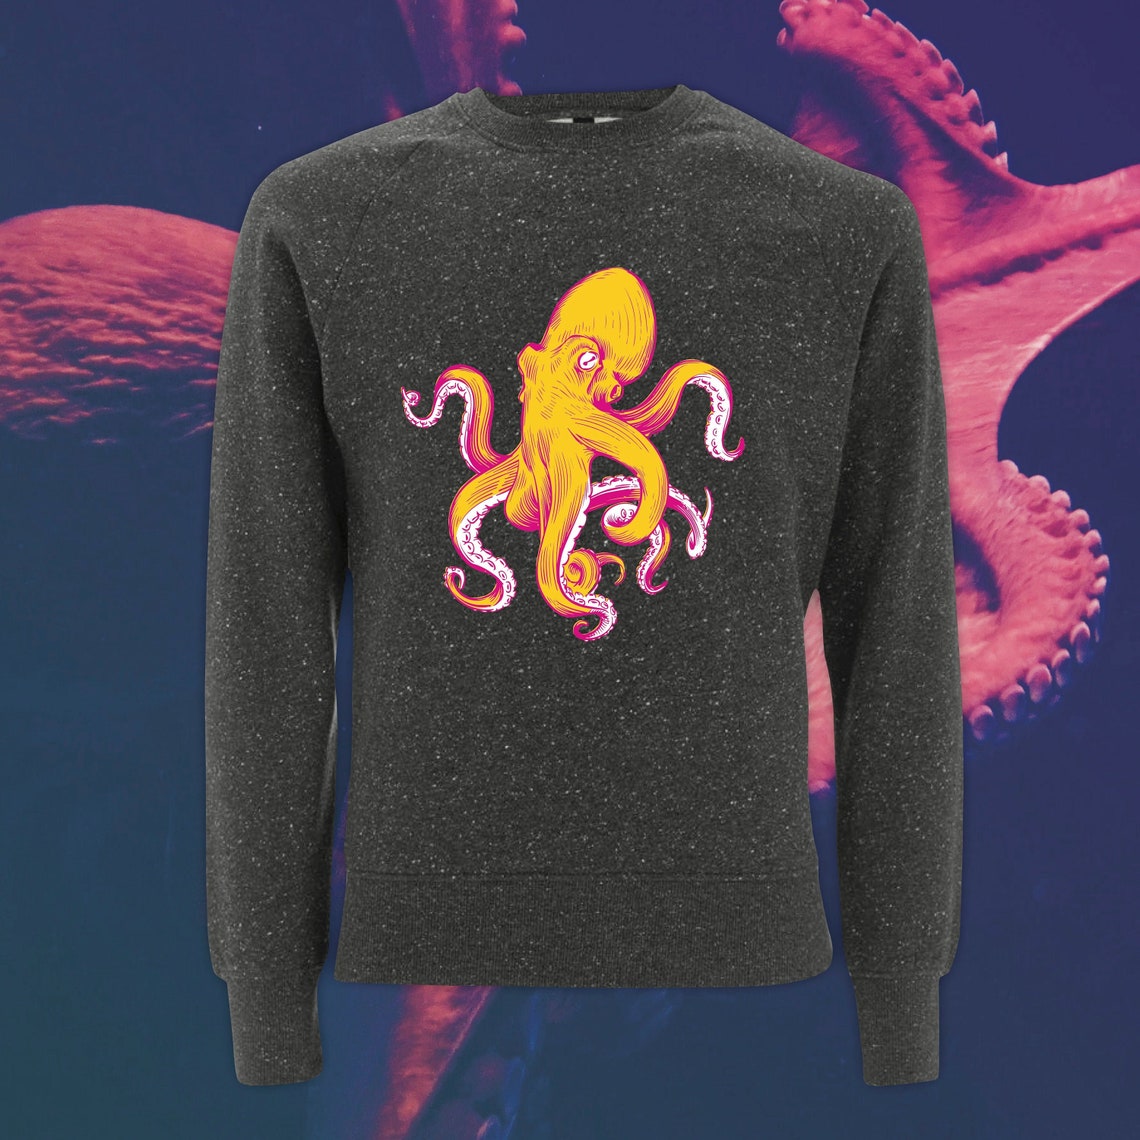 Mr Octopus Octopus Sweater Octopus Jumper Vinyl Sweater - Etsy